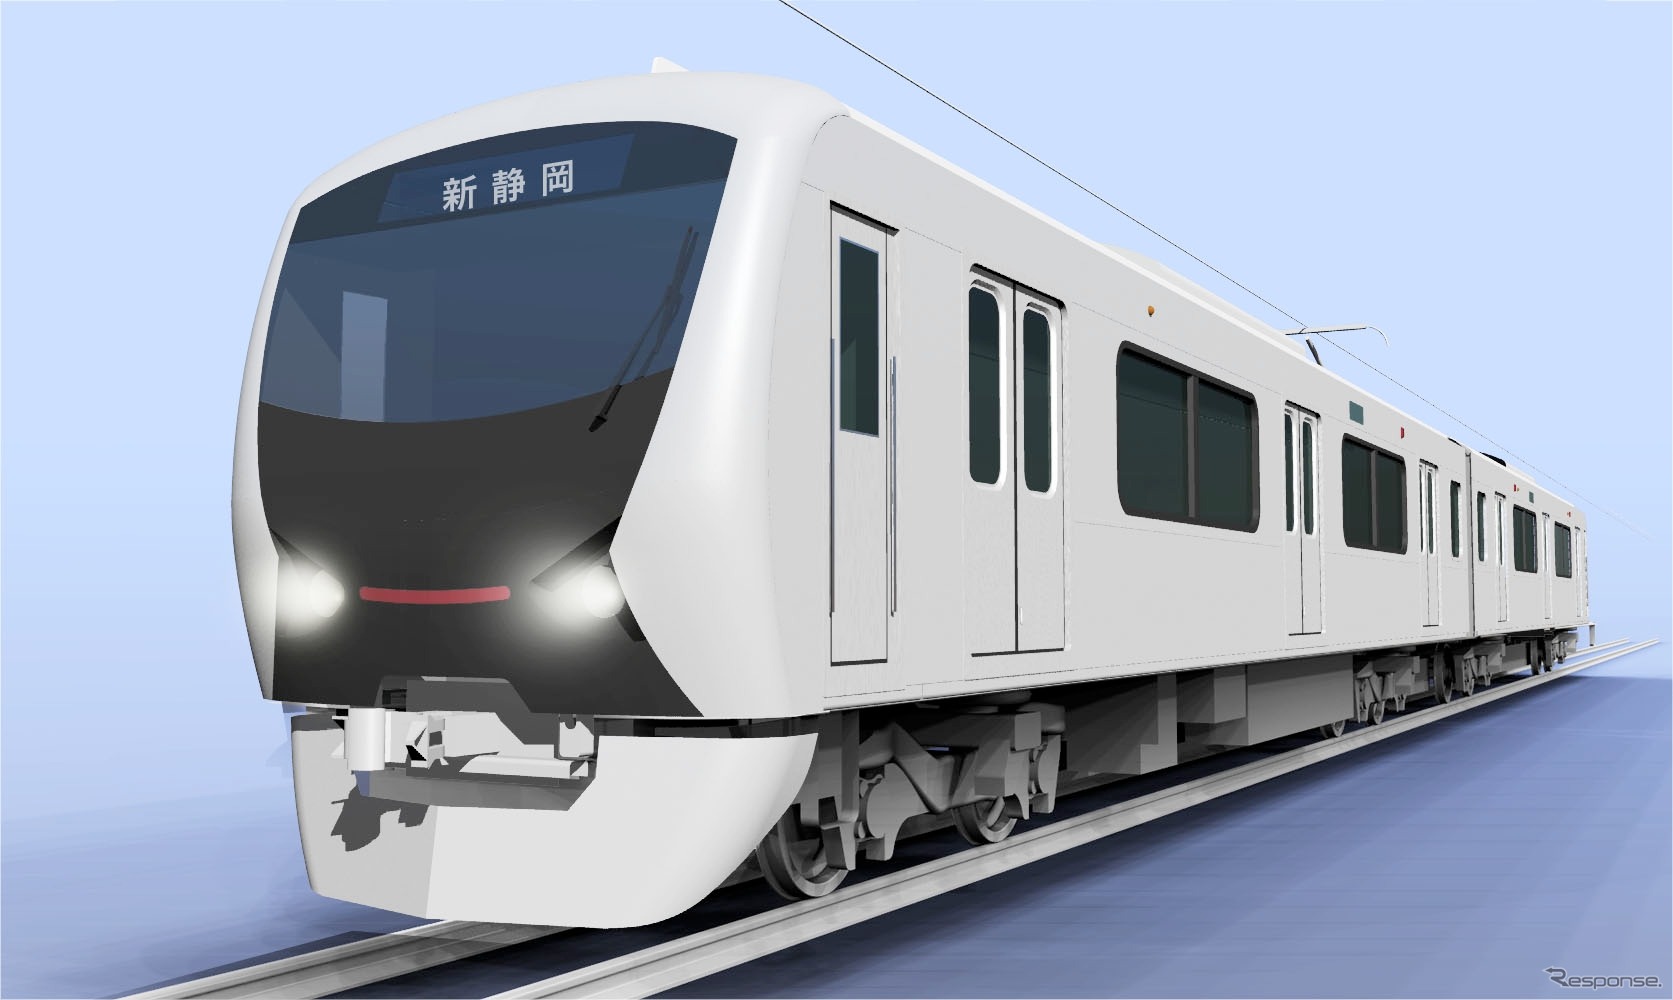 静岡鉄道が約40年ぶりに導入する新型車両のイメージ。2016年春から運行を開始する。